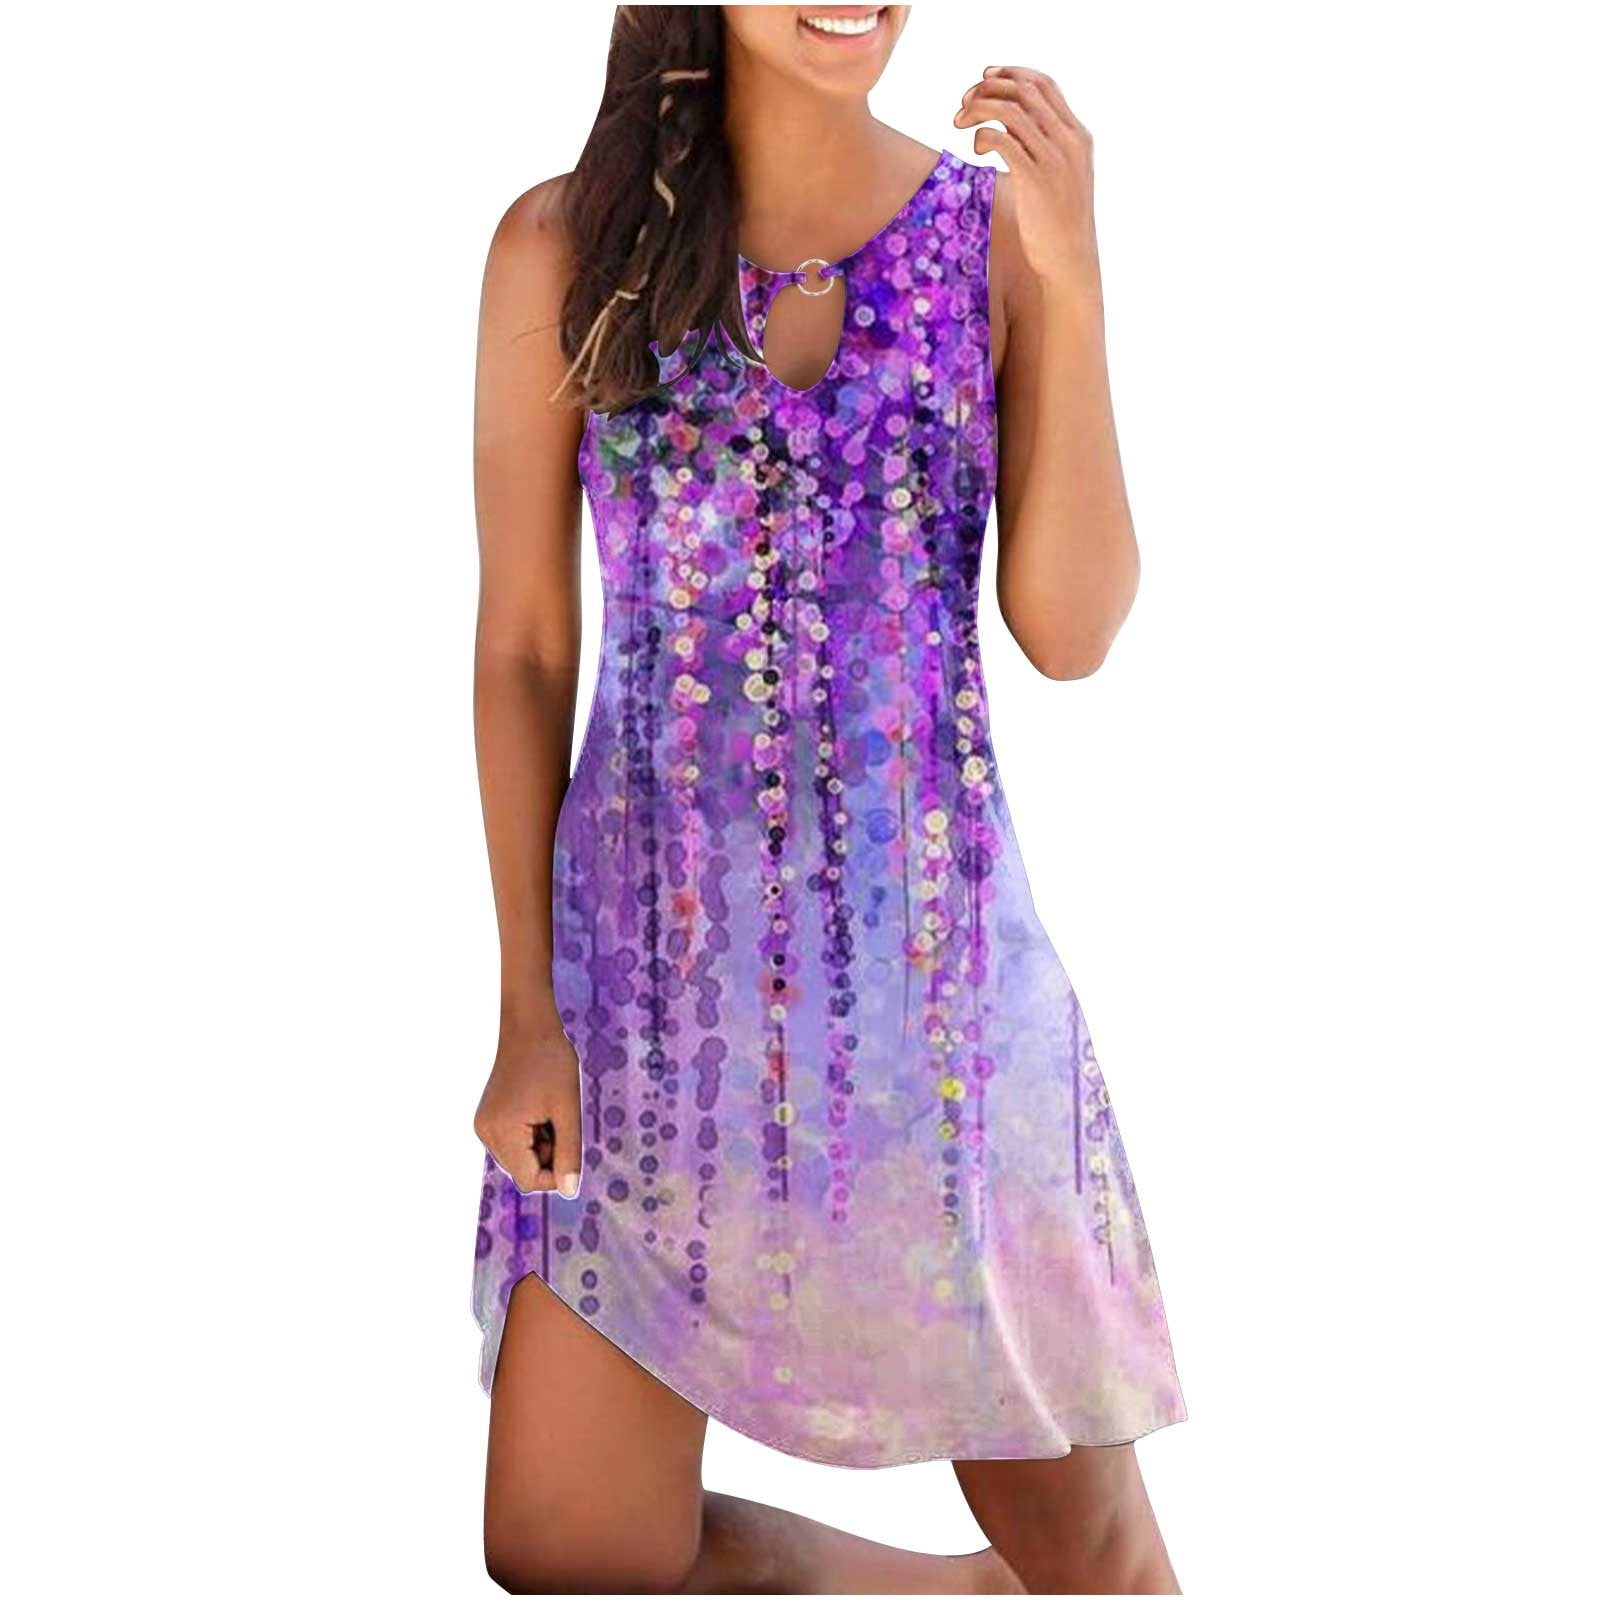 Ross Dress for Less Women's Summer Dress Hide Belly Casual Beach ...